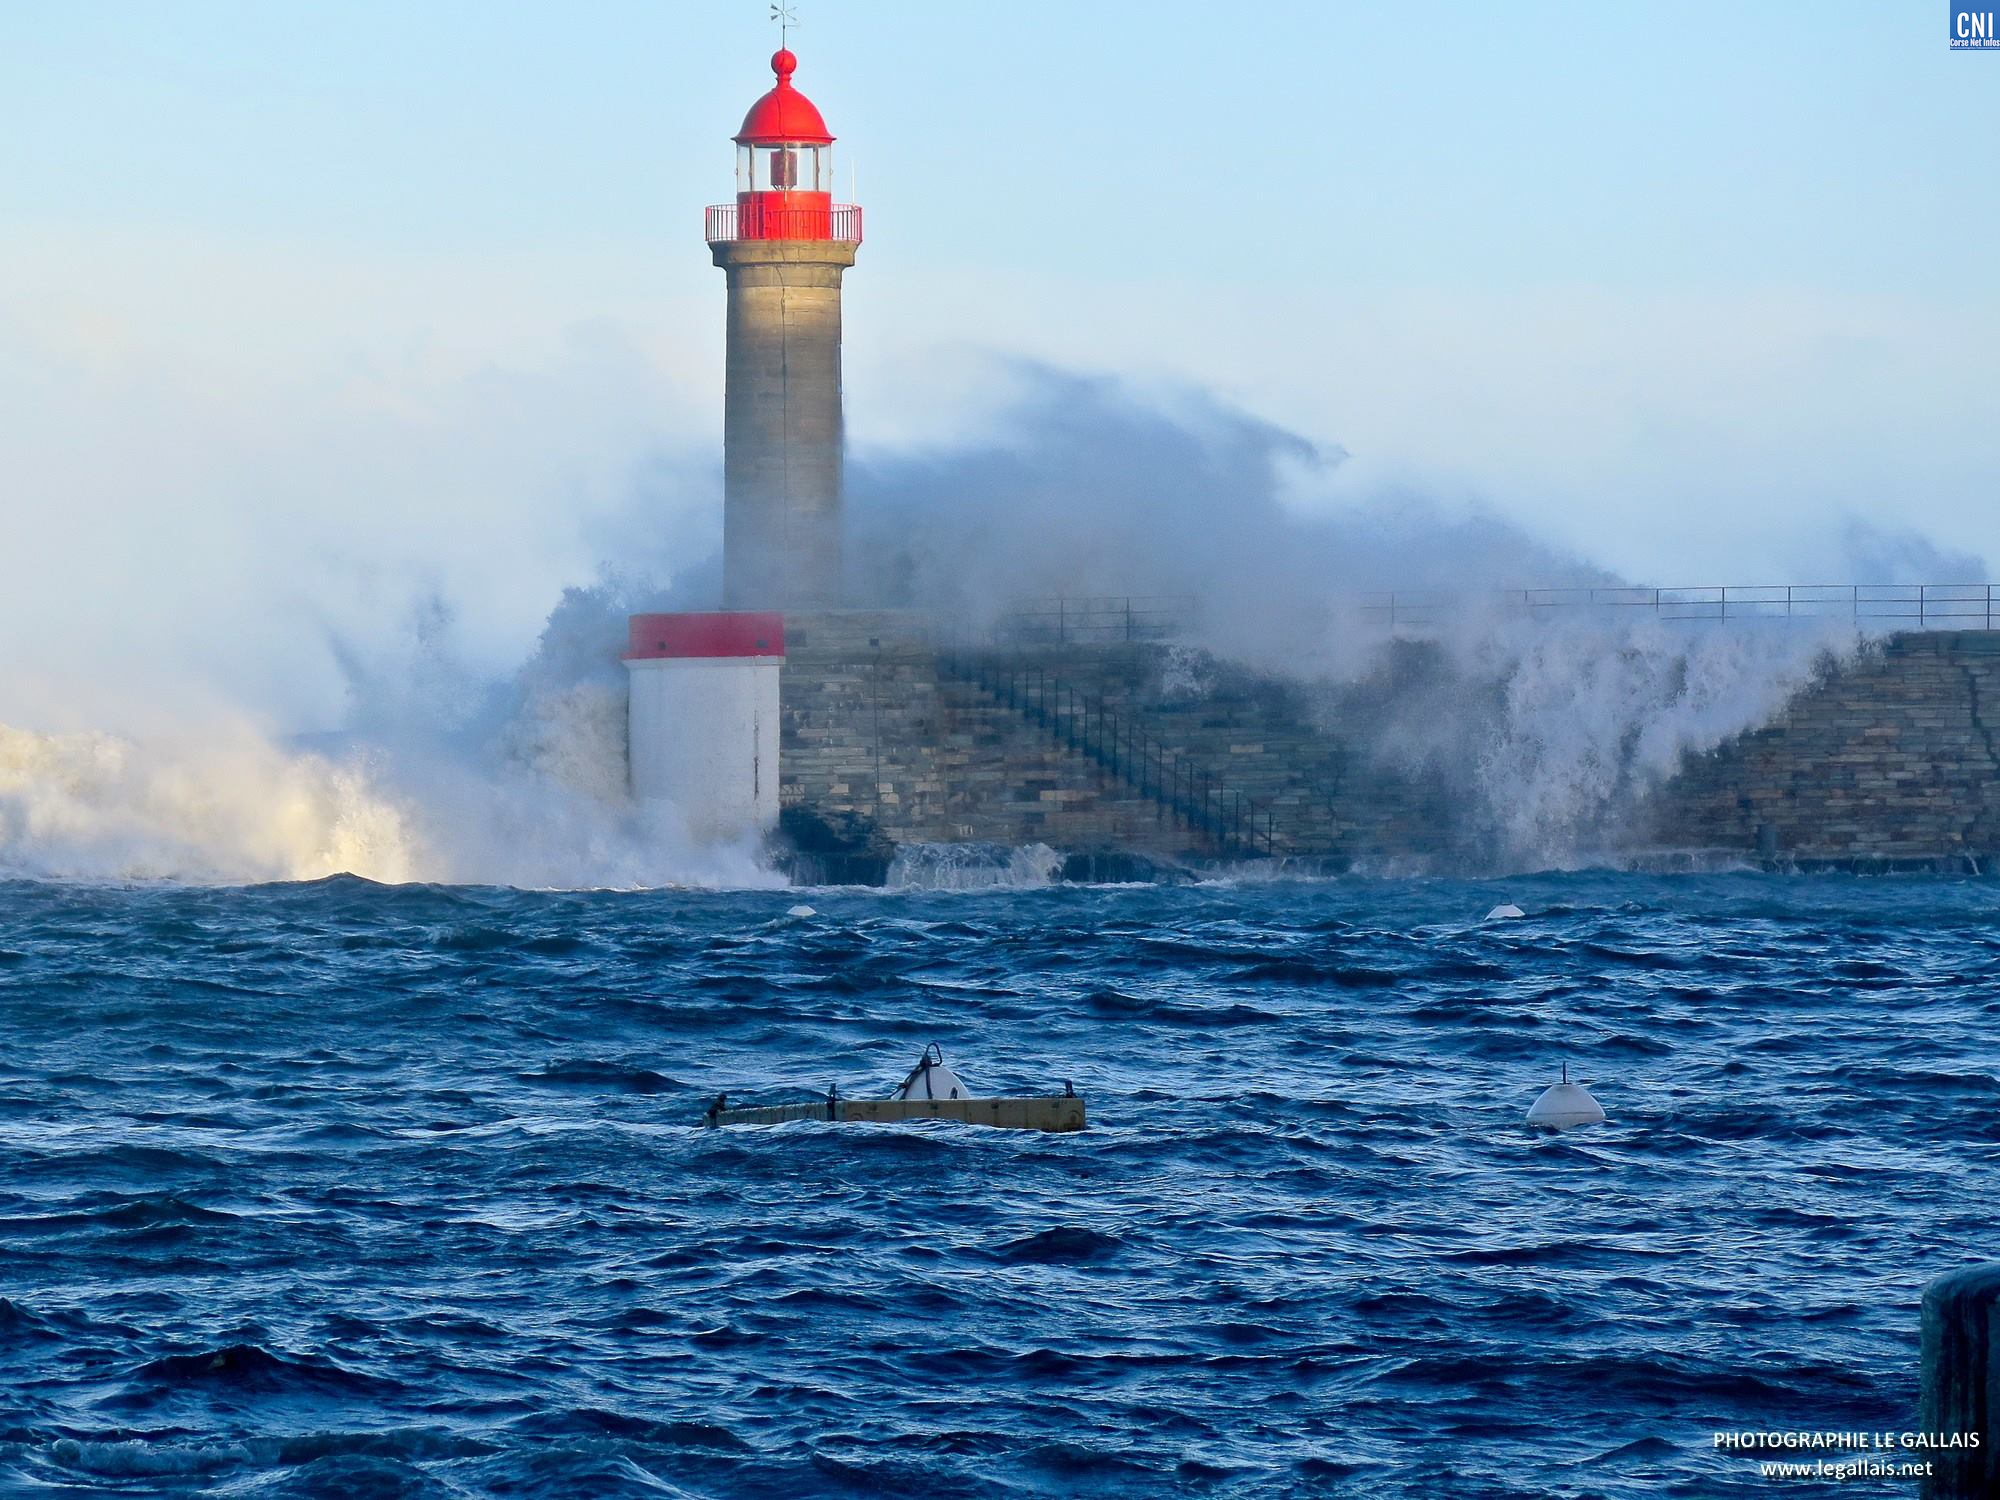 La Haute-Corse placée en vigilance jaune vagues-submersion ce mercredi